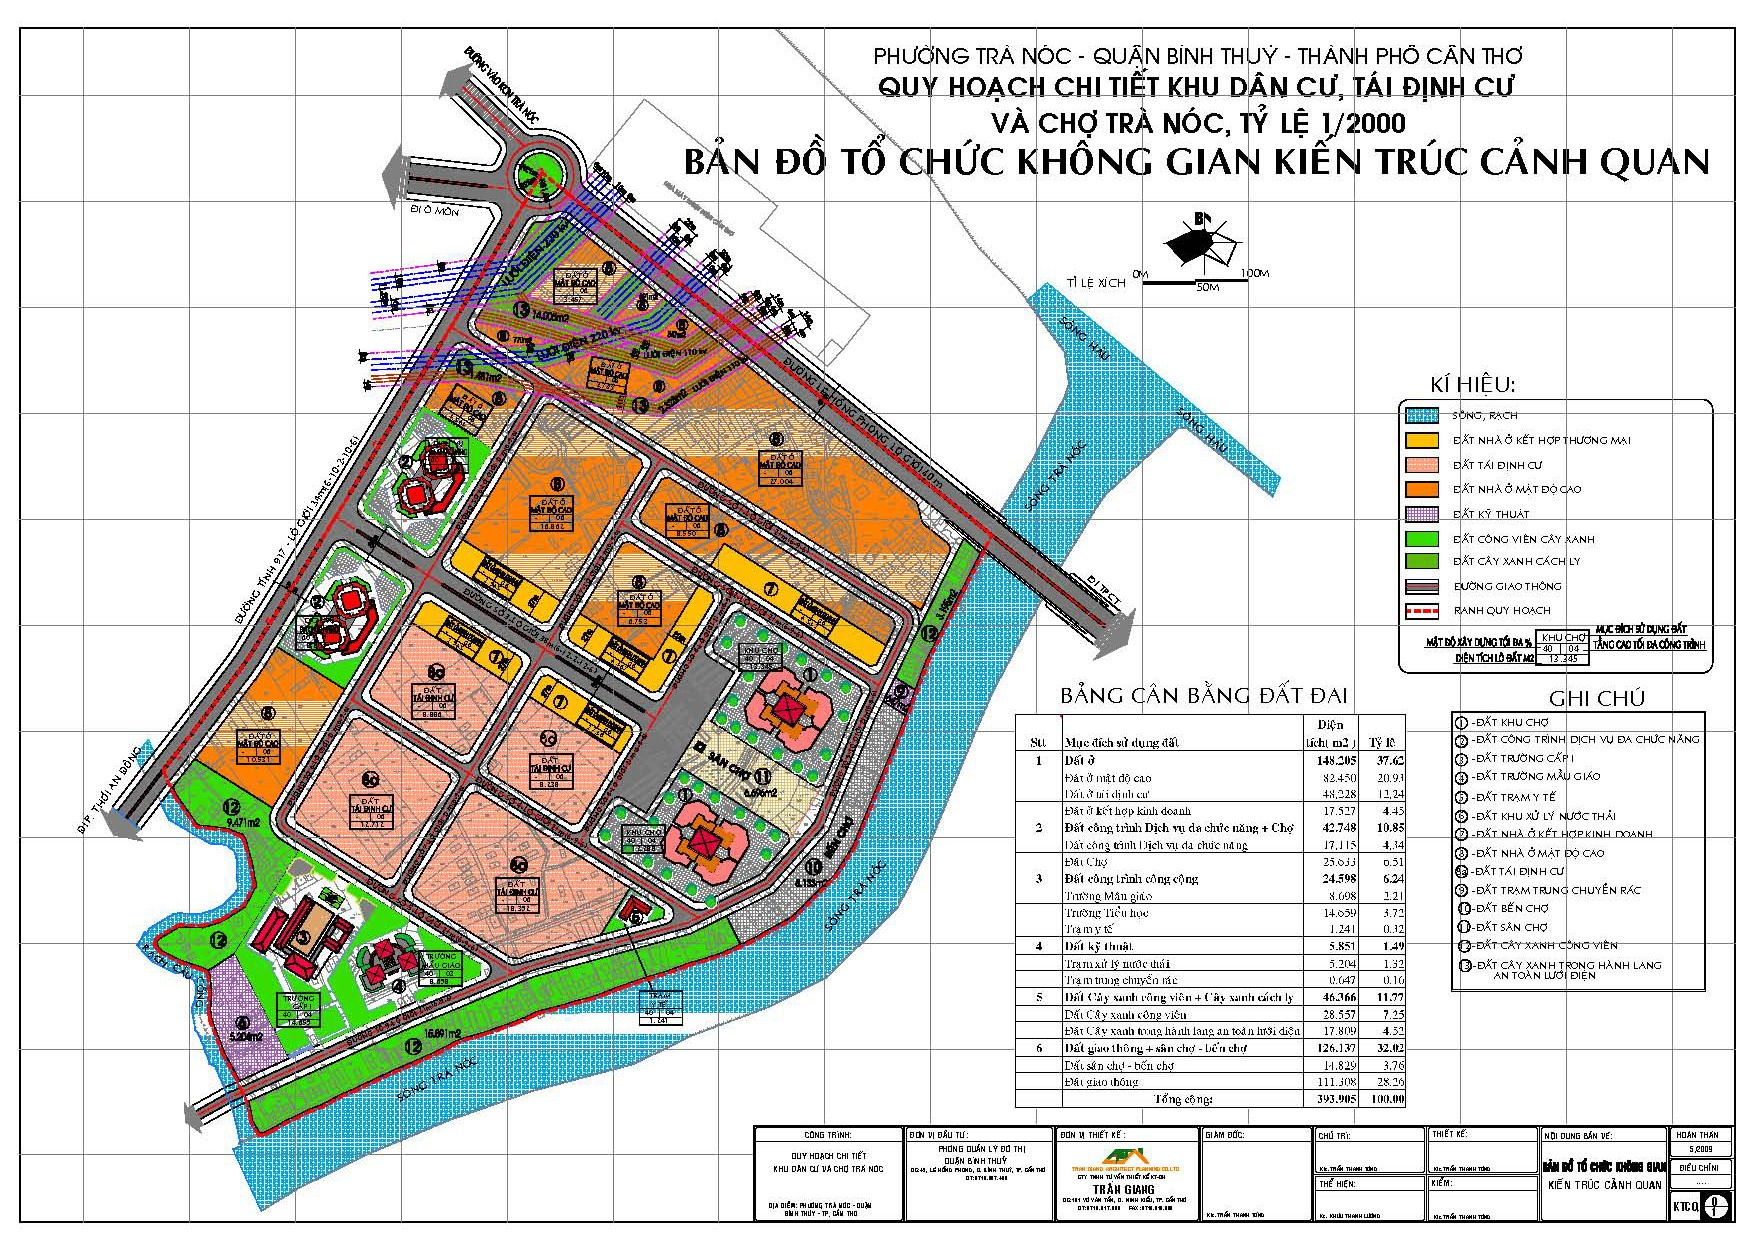 Bản đồ quy hoạch chợ Cần Thơ, khu dân cư Trà Nóc, quận Bình Thuỷ